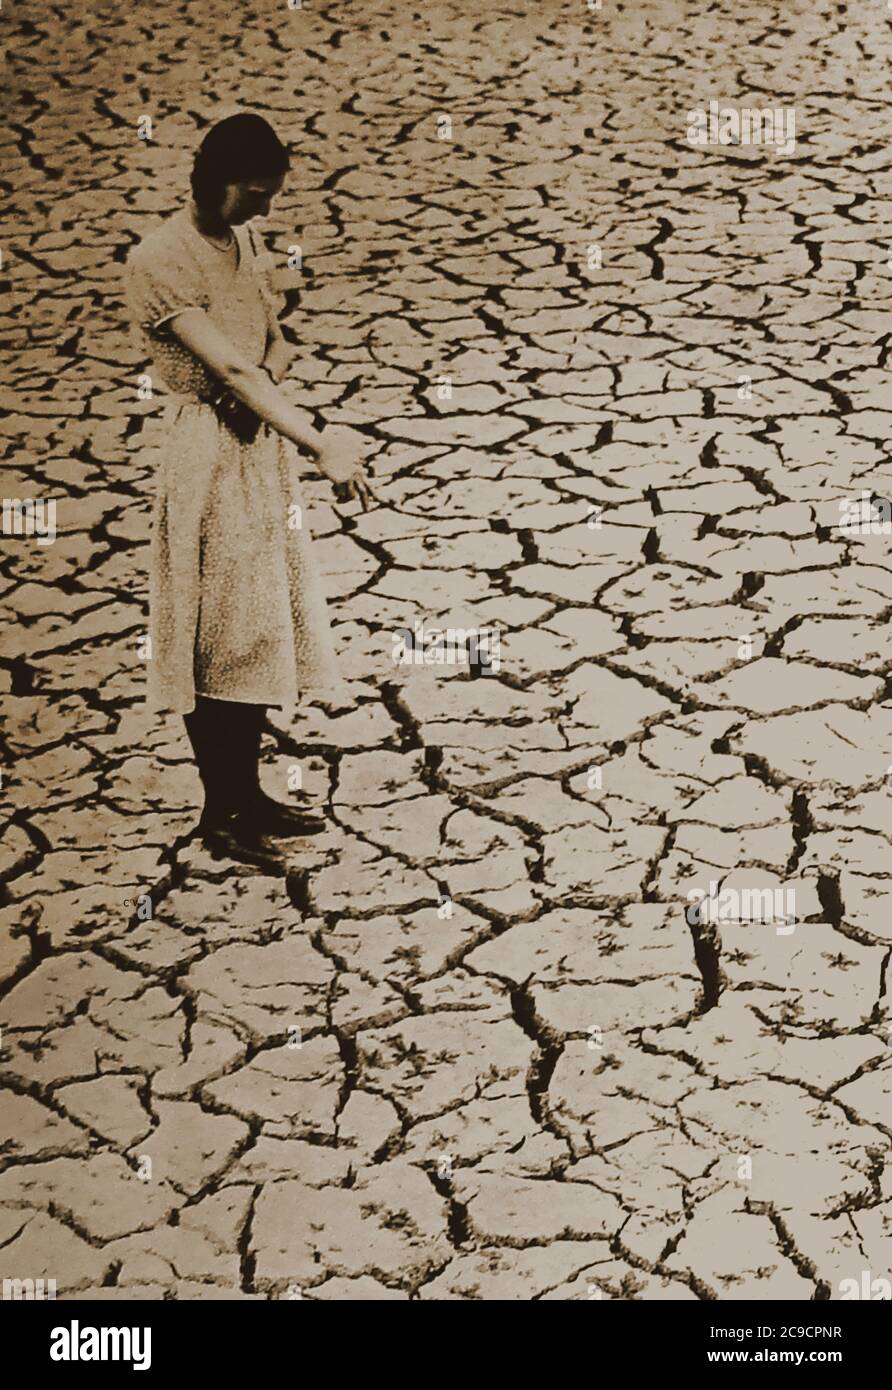 1934 siccità nel Regno Unito - una fotografia scattata all'epoca sul letto del bacino idrico di Tring, Hertfordshire. Tra l'autunno 1932 e l'autunno 1934 si è verificata una grave siccità a seguito della precedente calda estate. Era più intenso in tutta la Gran Bretagna meridionale. Foto Stock